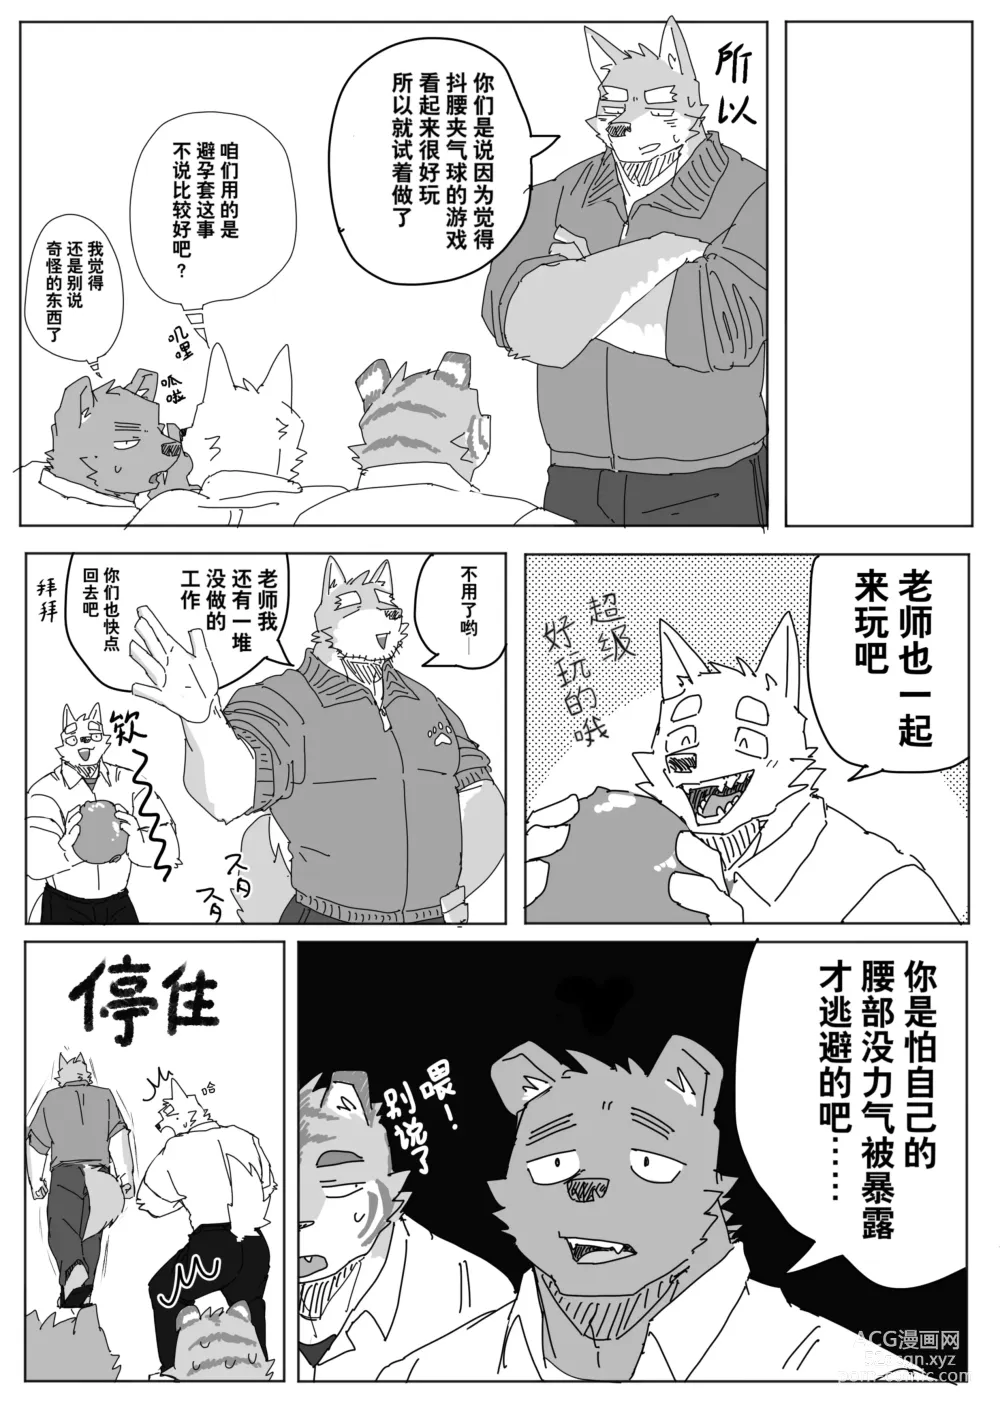 Page 8 of manga 放学后的游戏+后续